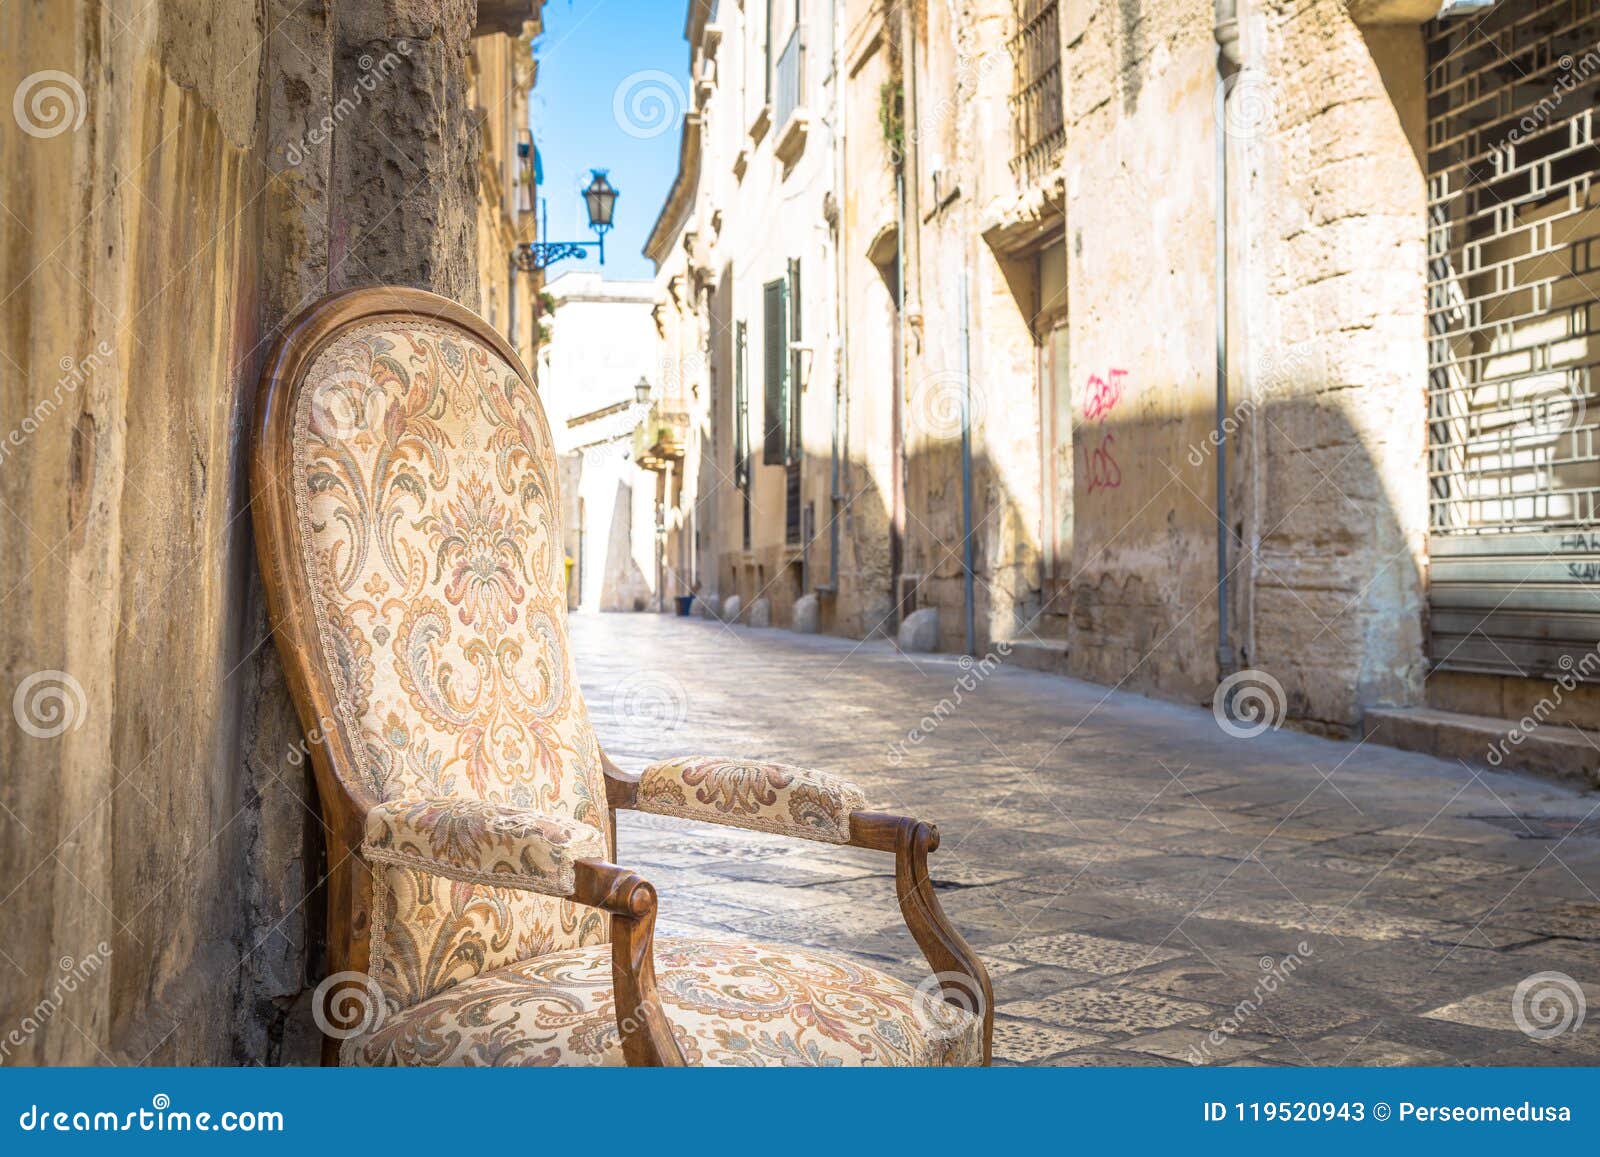 Stary krzesło w tradycyjnej ulicie Lecka, Włochy. Lecka miasteczko, Włochy Rocznika krzesło z starą grodzką ulicą w tle